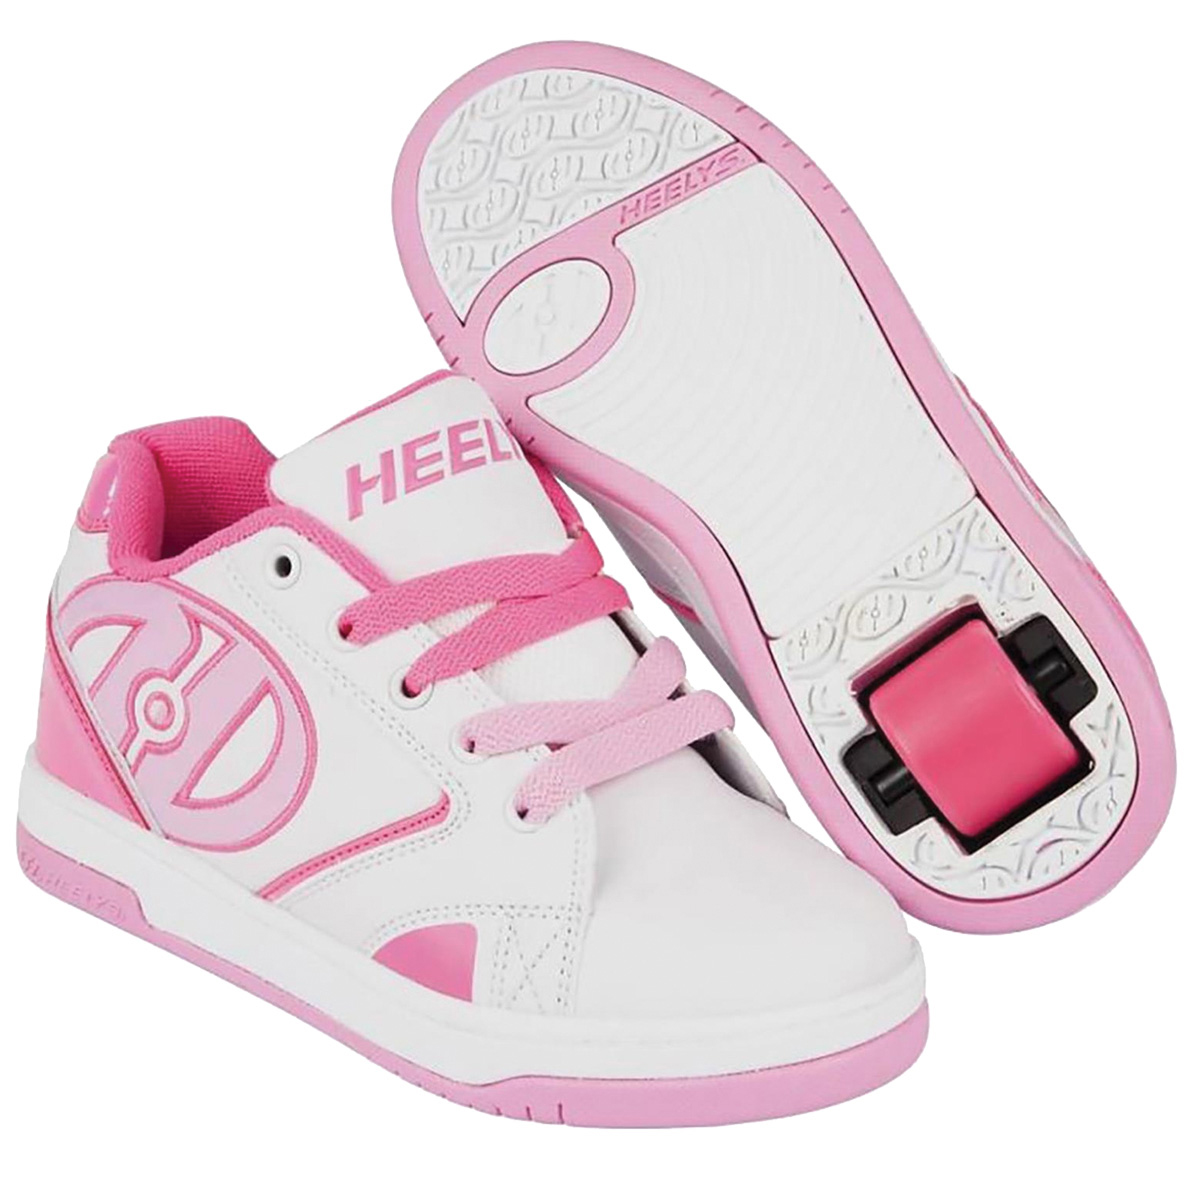 Кроссовки роликовые для девочки Heelys, цвет: белый, розовый. 770605. Размер 35 (34)